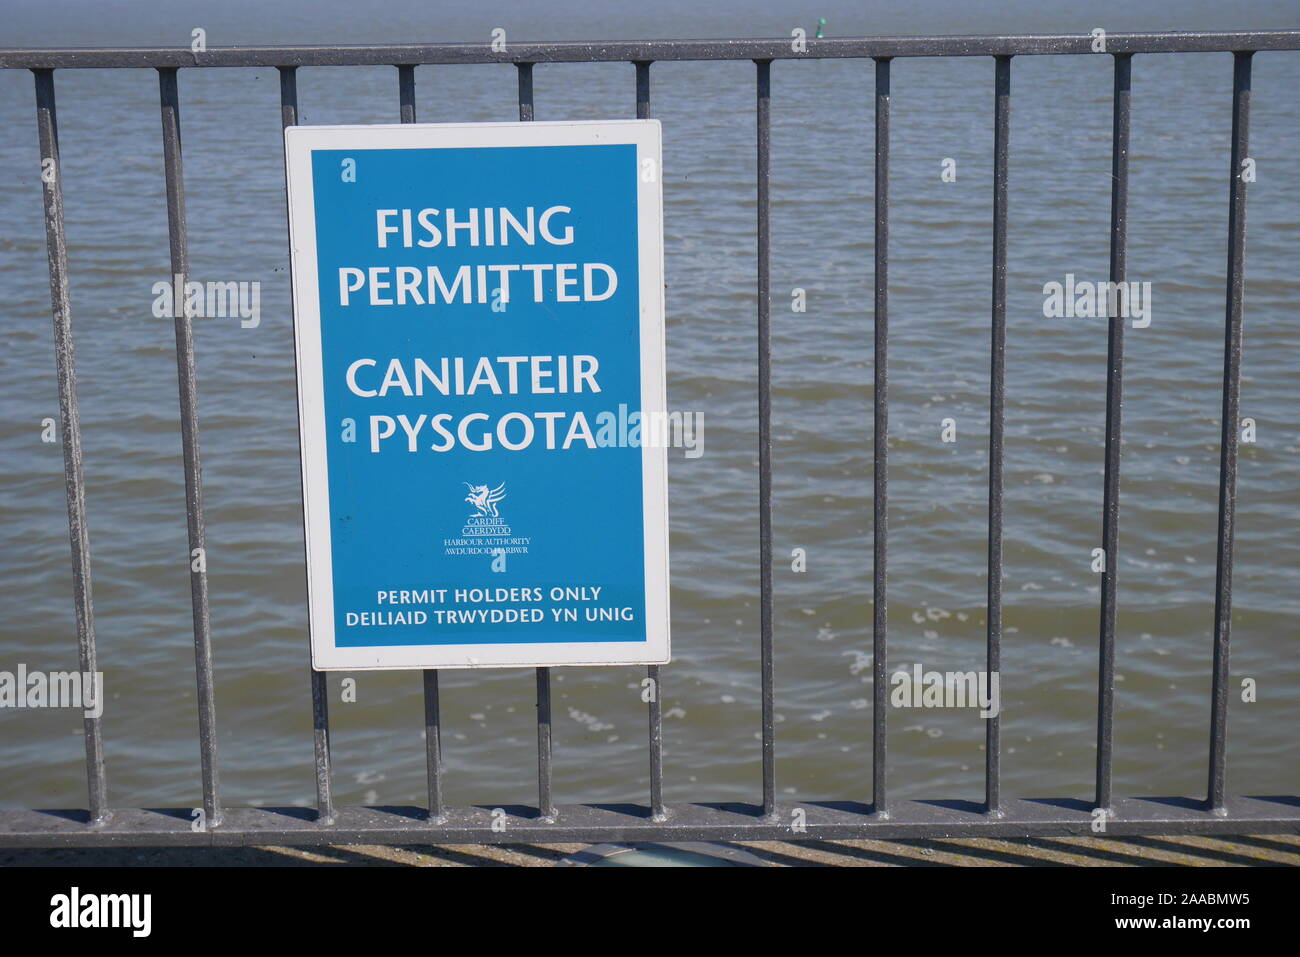 Affiche bilingue sur les garde-corps en anglais et gallois et aucun permis de pêche : Pêche, Barrage de la baie de Cardiff, Cardiff, Pays de Galles, Royaume-Uni Banque D'Images